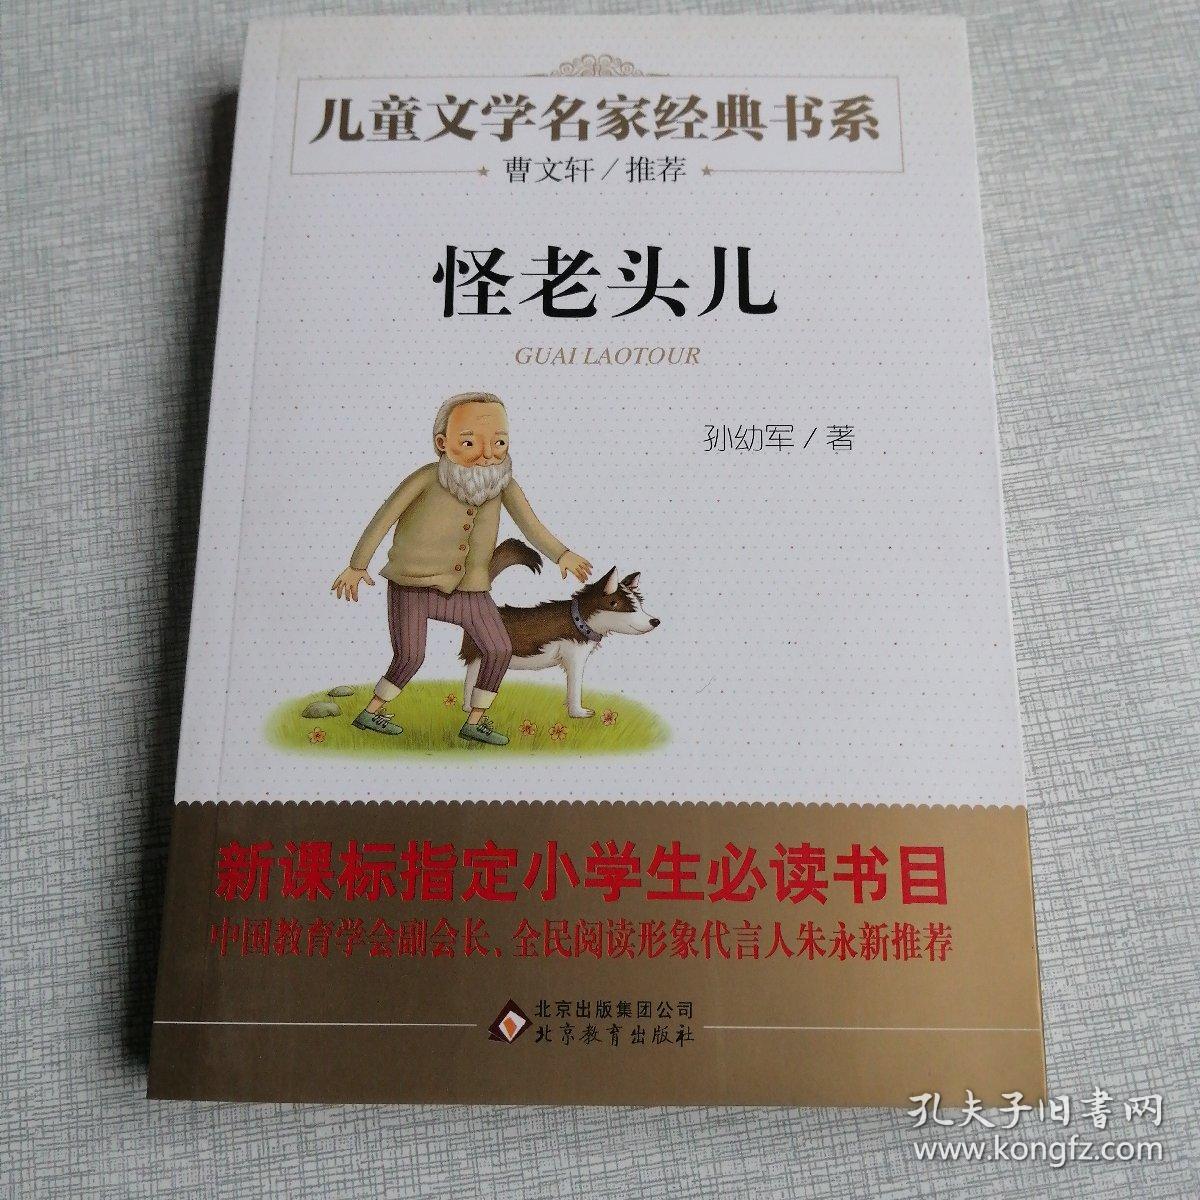 曹文轩推荐儿童文学经典书系 怪老头儿